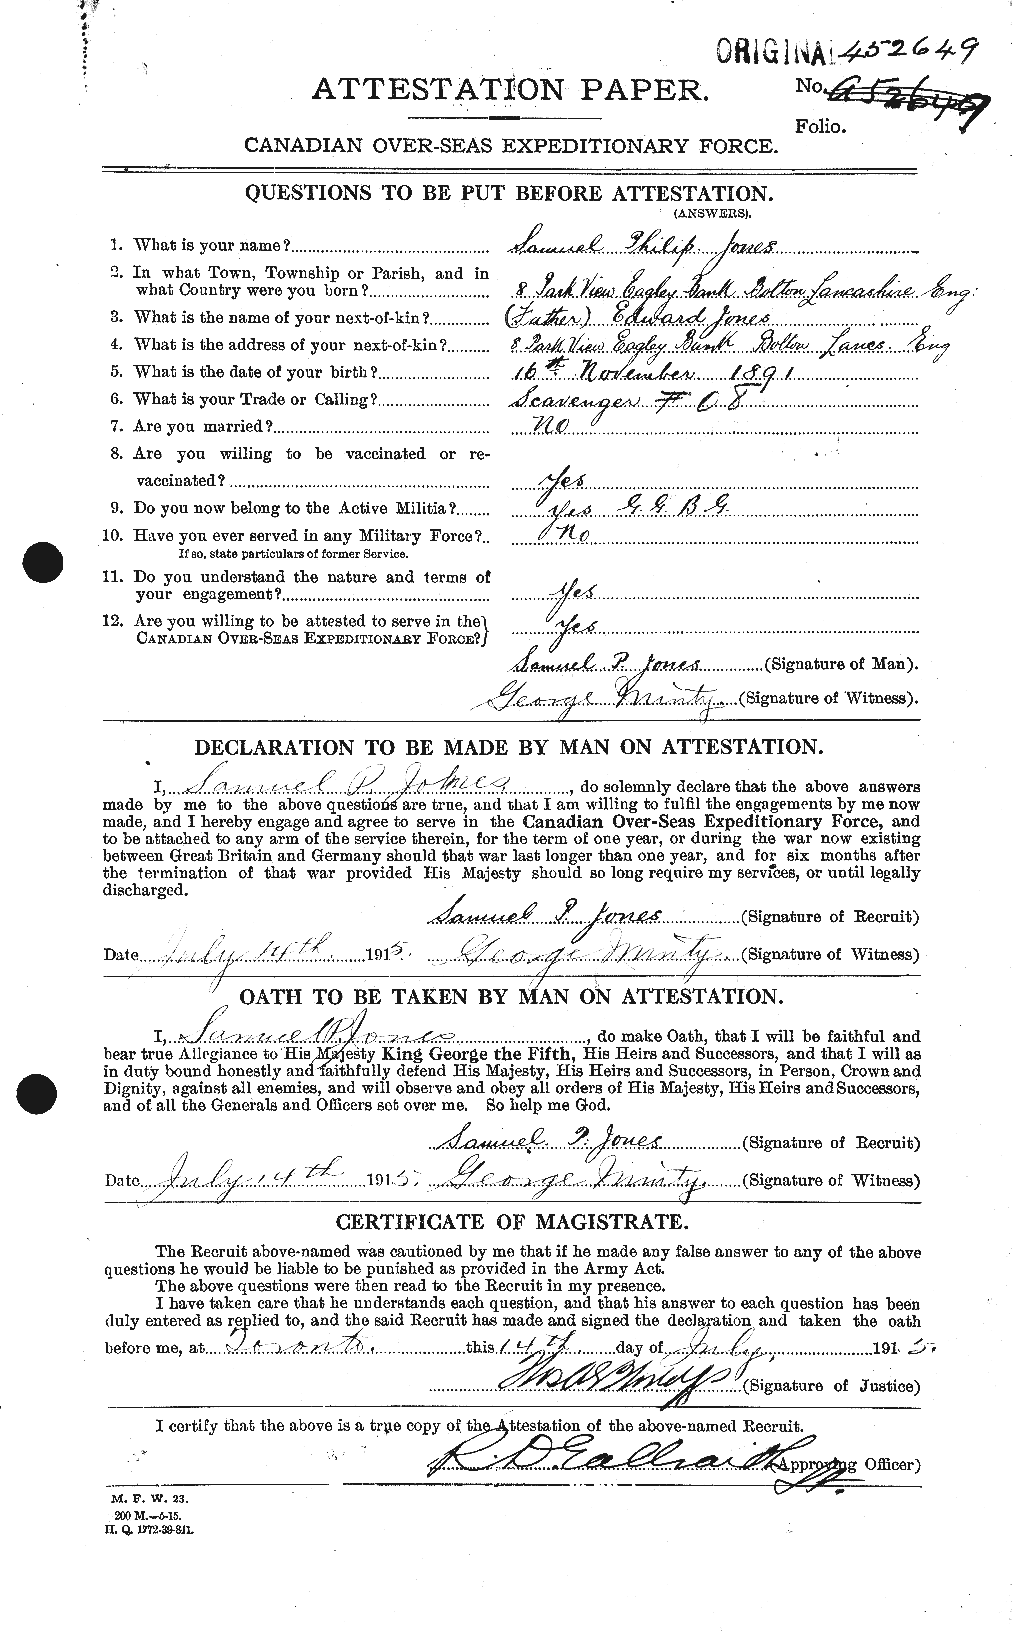 Dossiers du Personnel de la Première Guerre mondiale - CEC 426508a